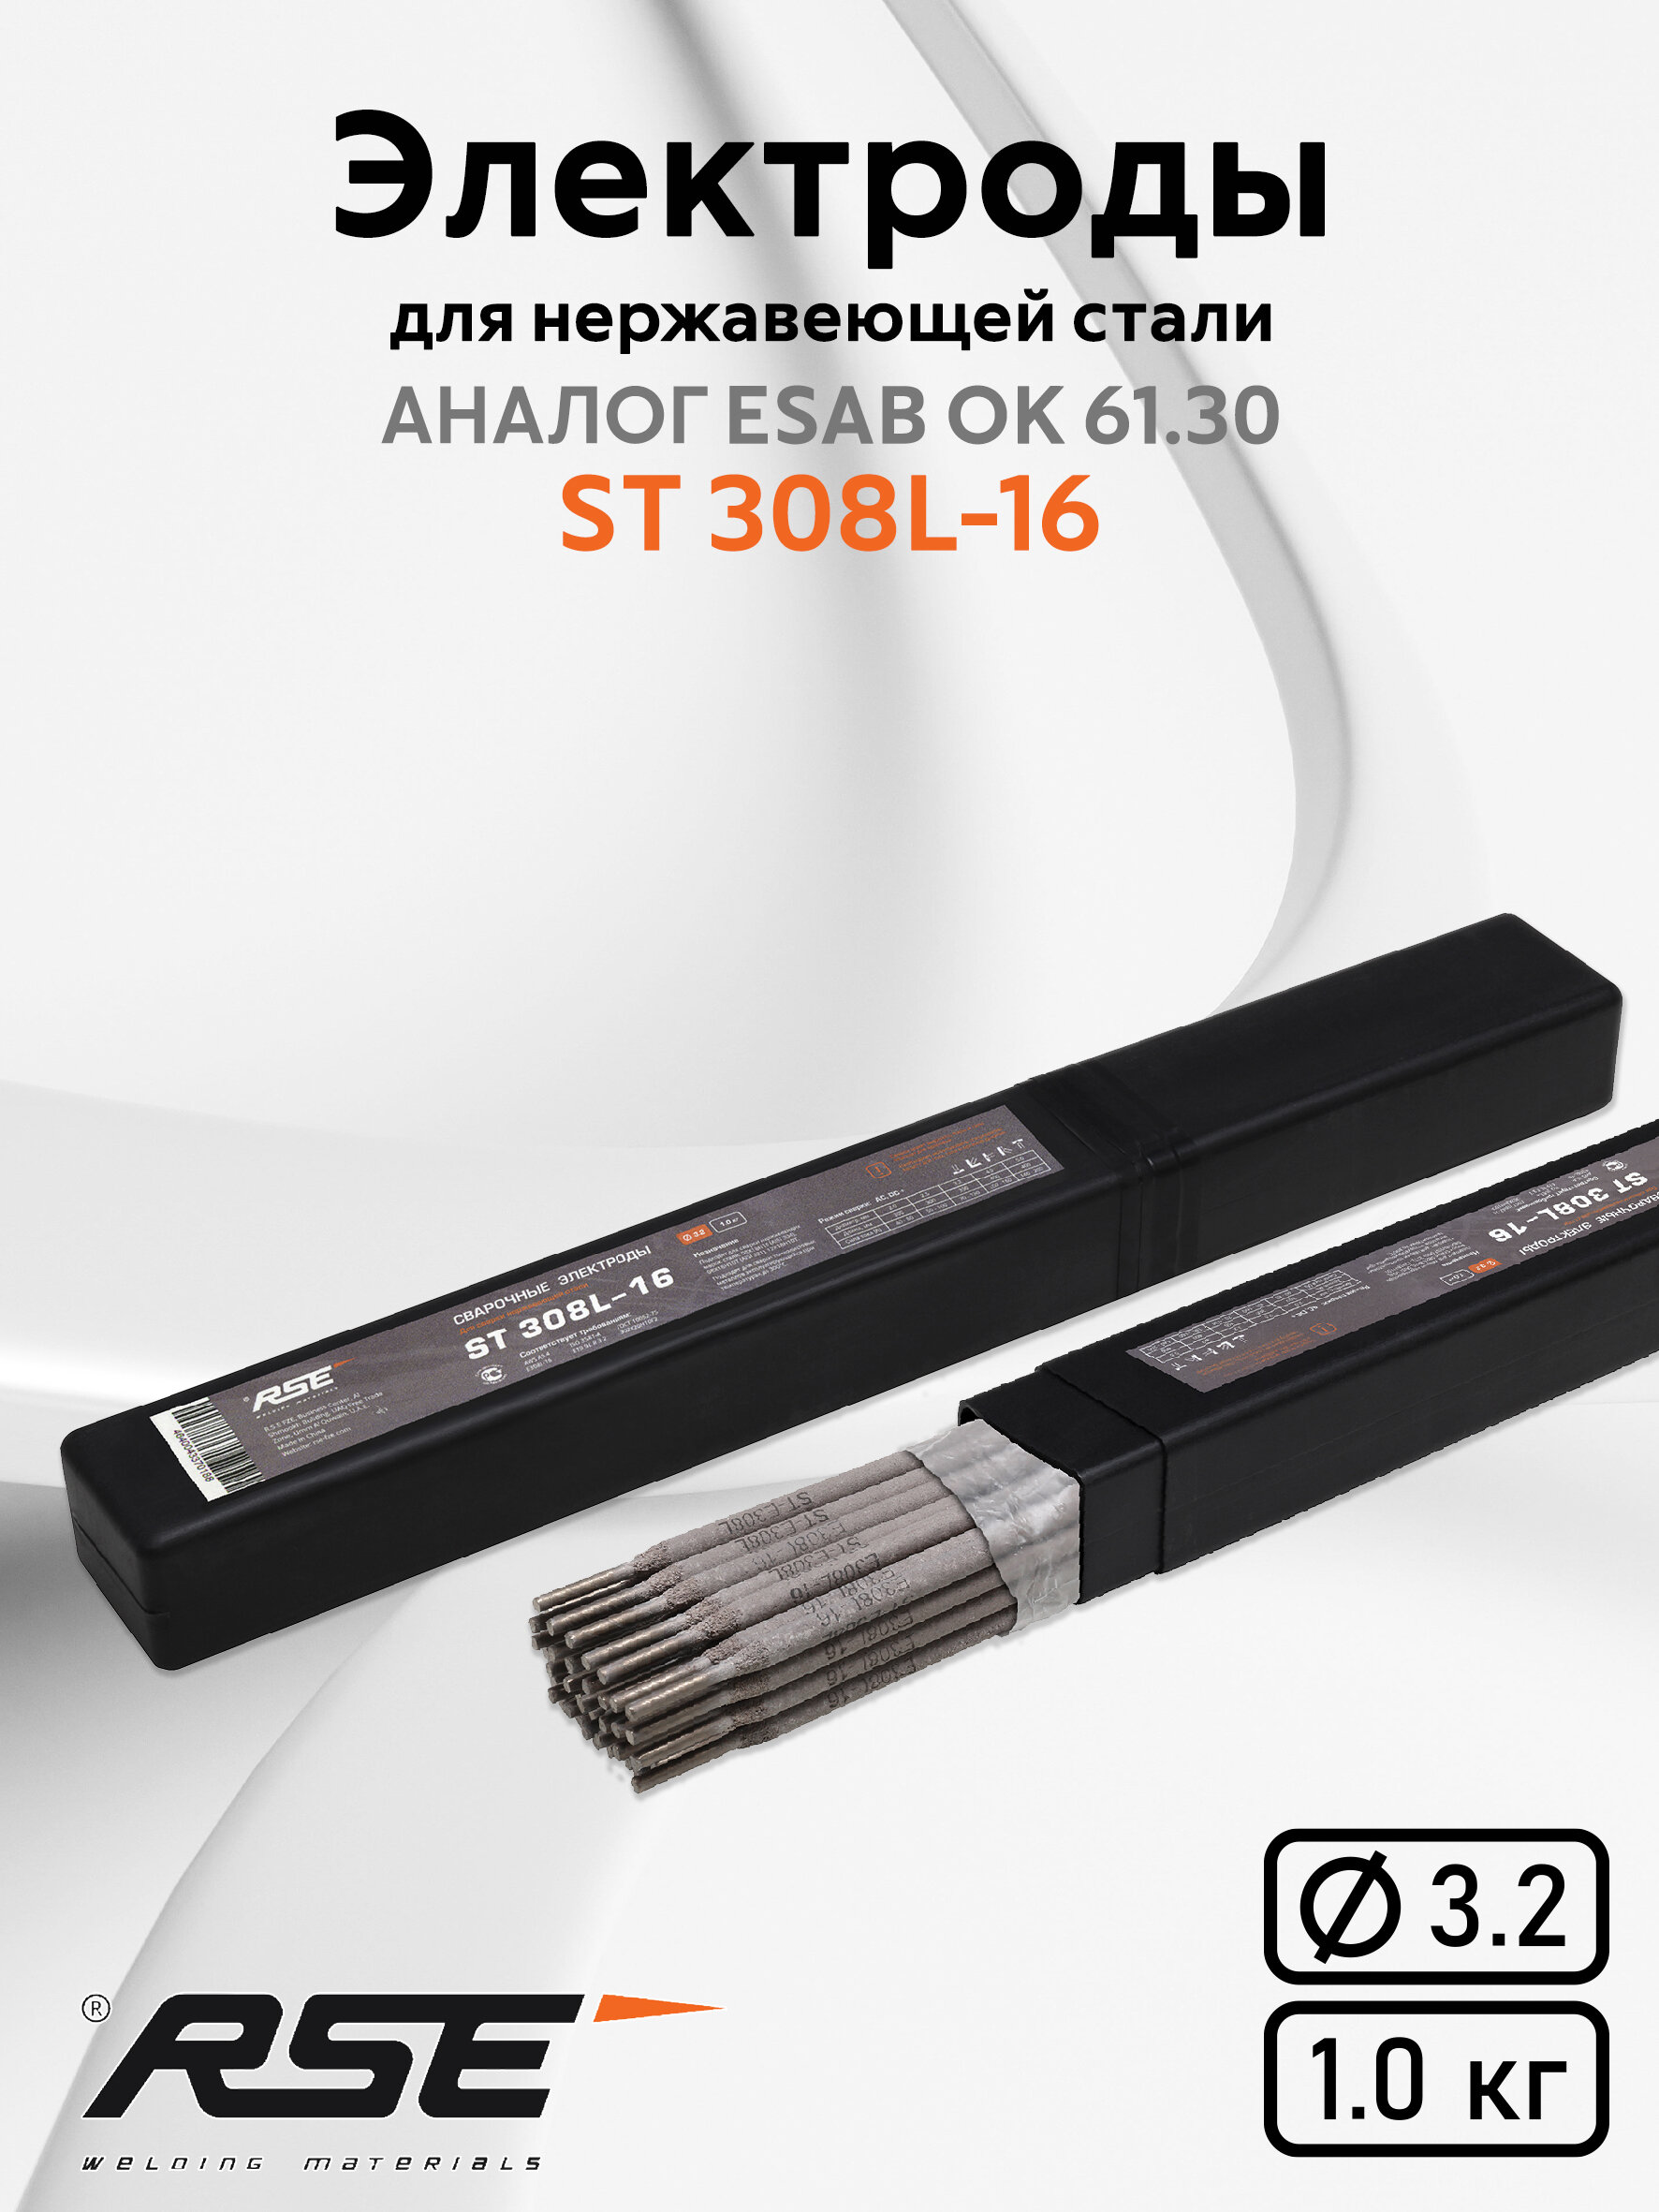 Электрод для ручной дуговой сварки RSE ST 308L-16